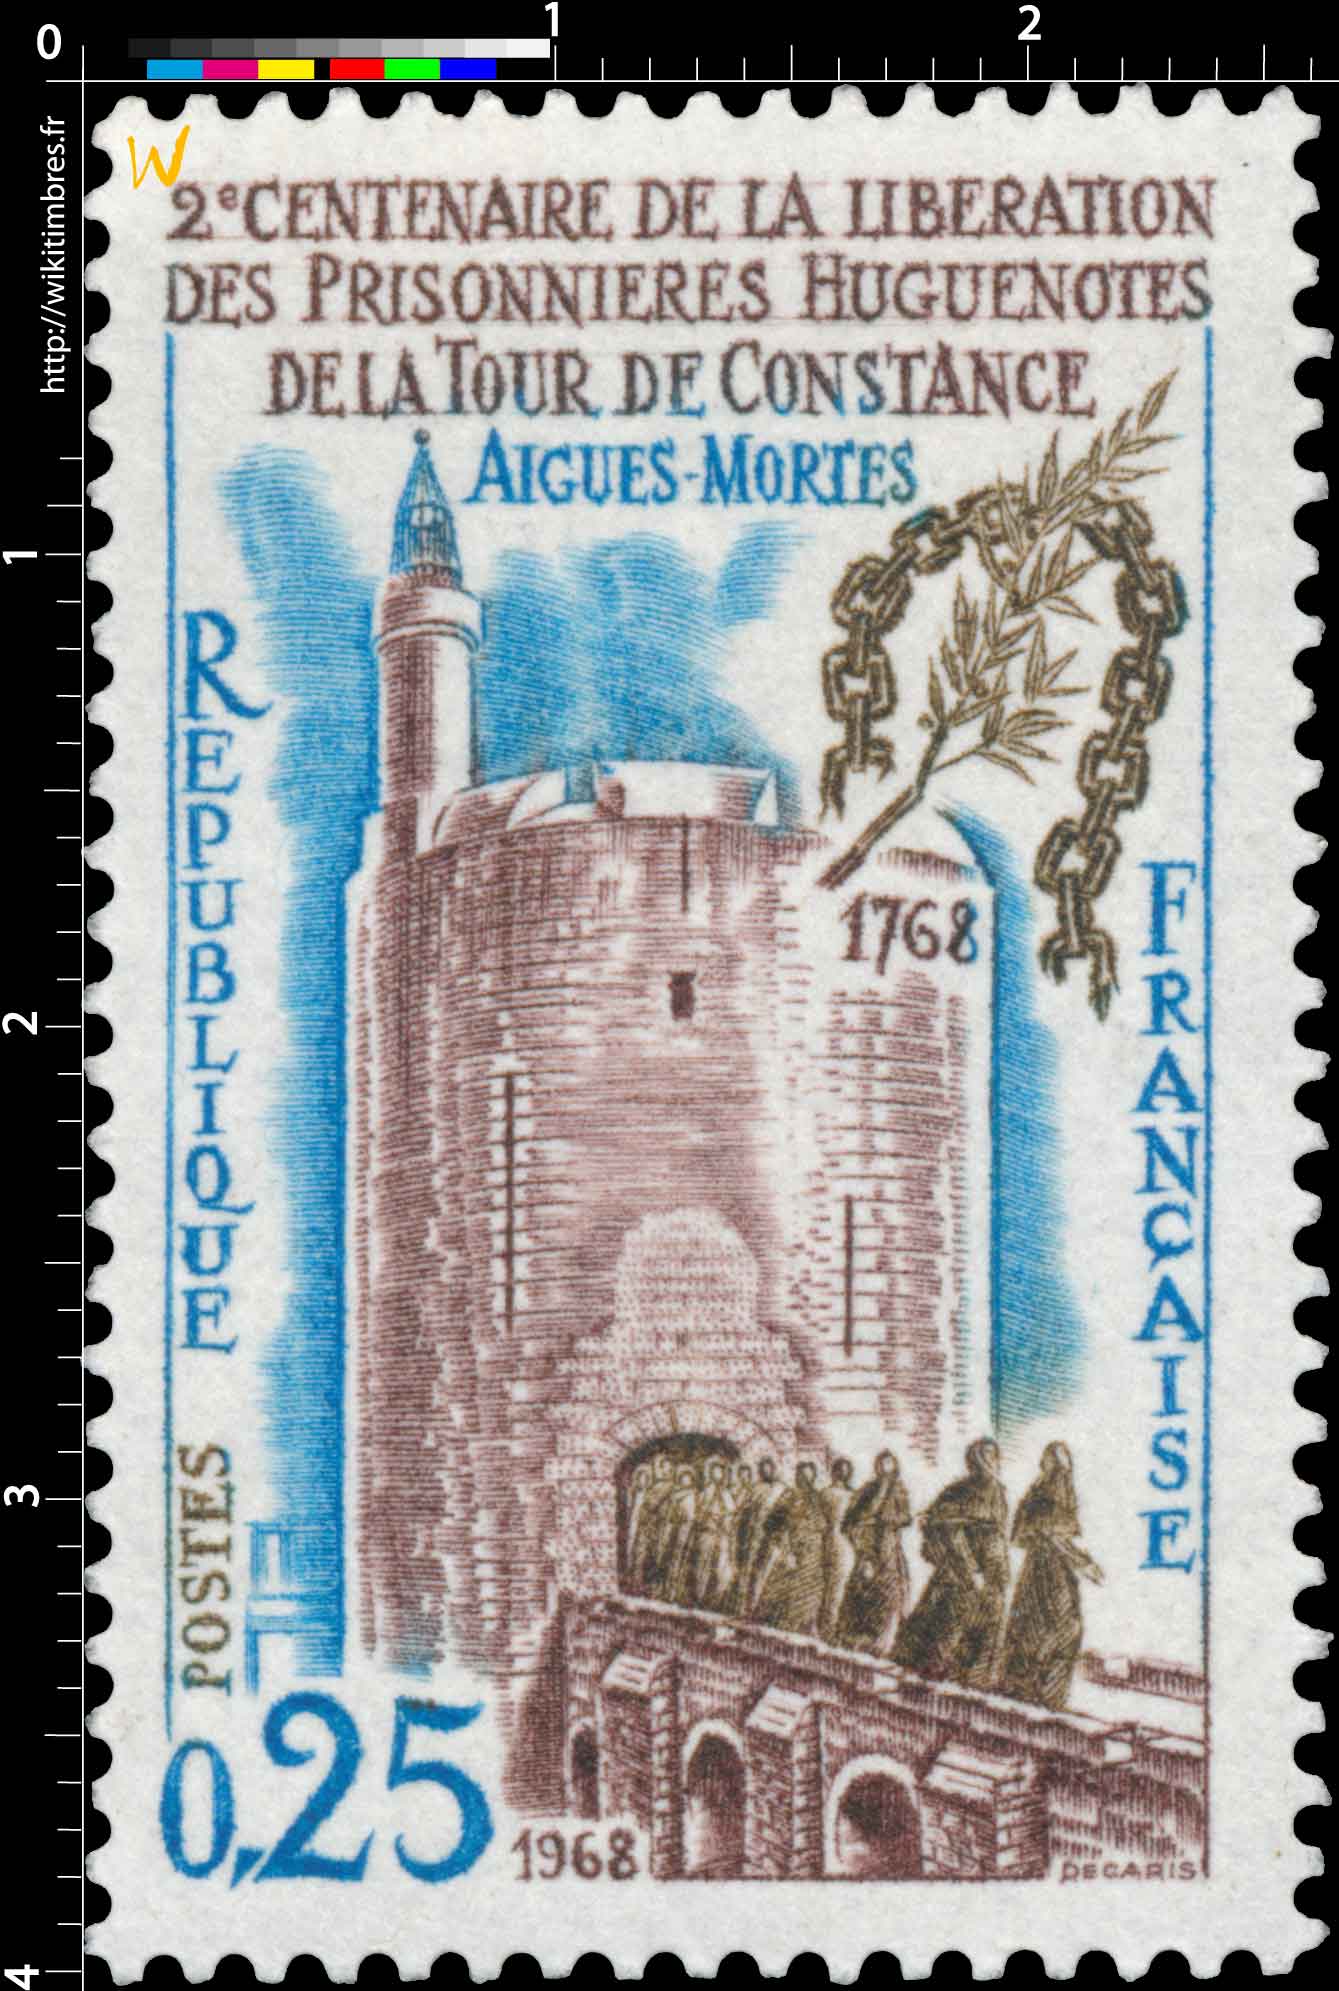 1968 BICENTENAIRE DE LA LIBÉRATION DES PRISONNIÈRES HUGUENOTES DE LA TOUR DE CONSTANCE AIGUES-MORTES 1768